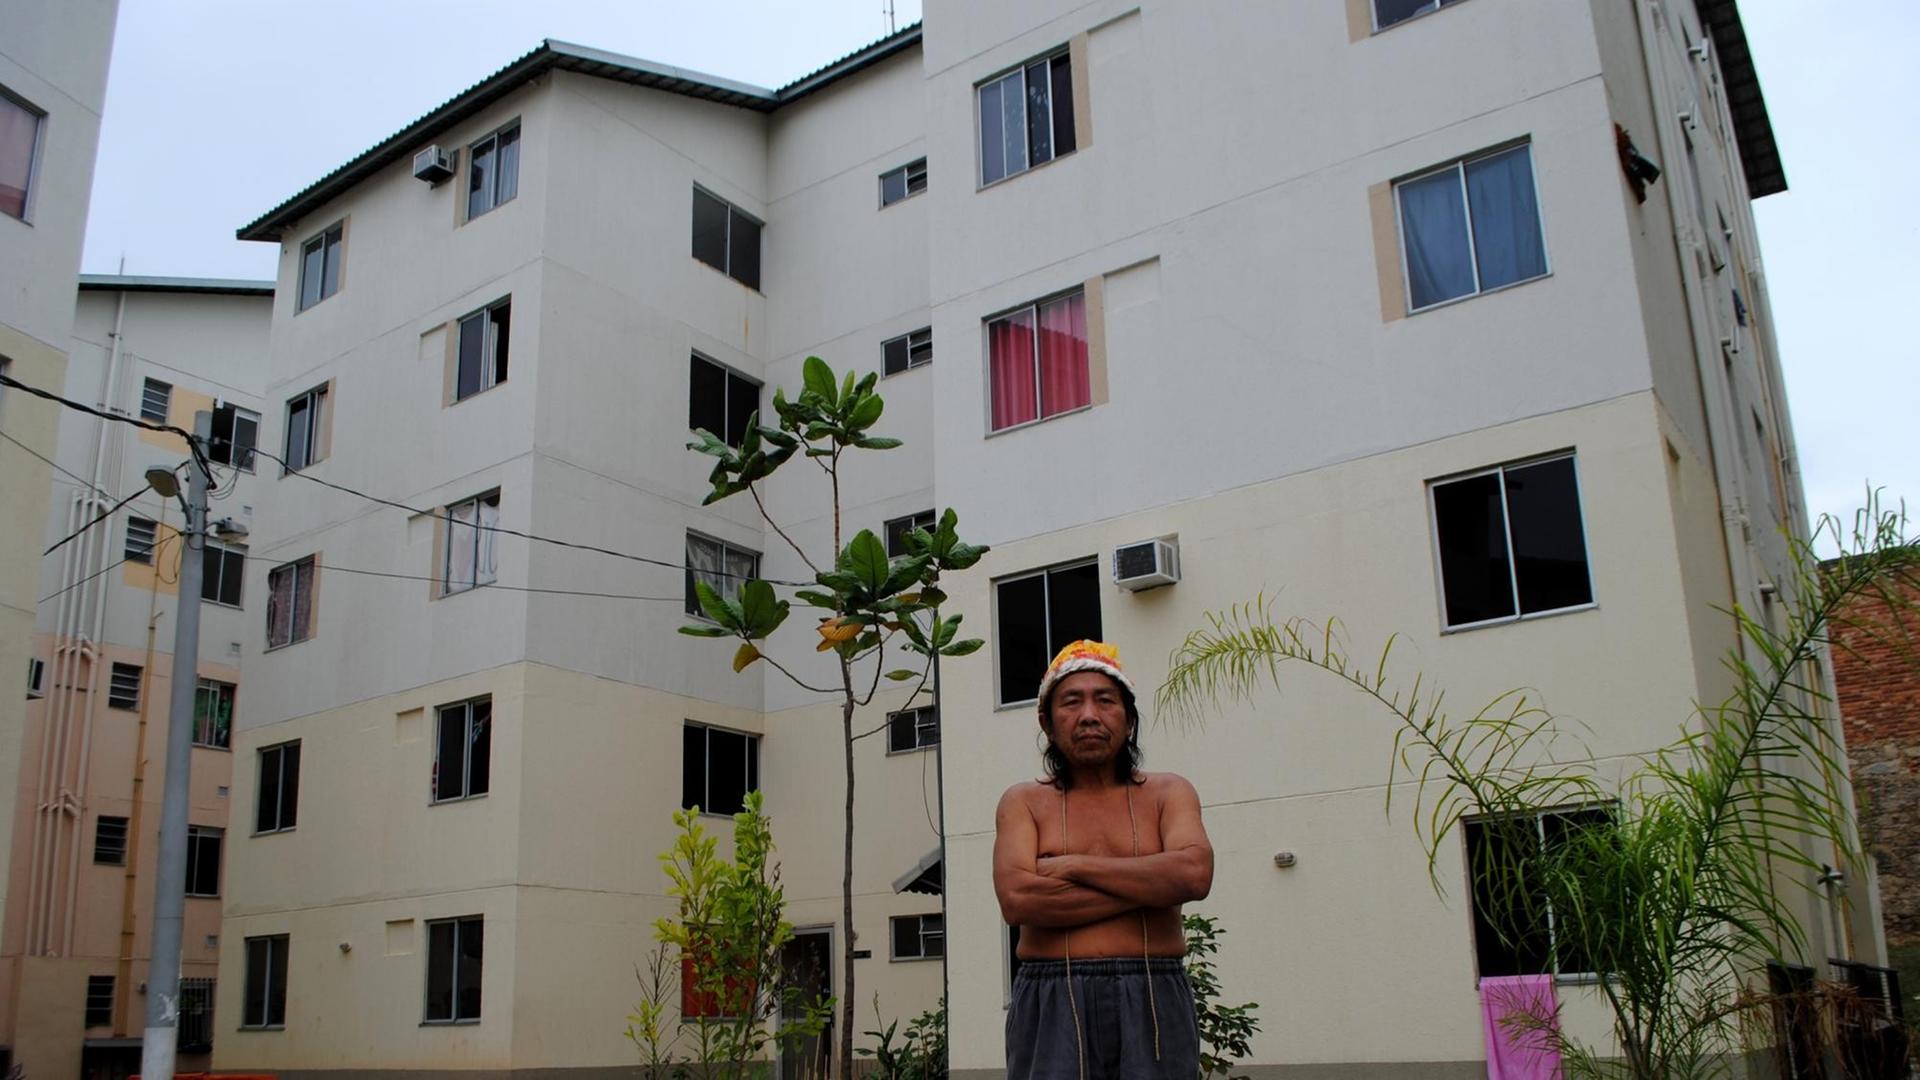 Carlos Turkano steht mit verschränkten Armen vor dem Wohnblock.